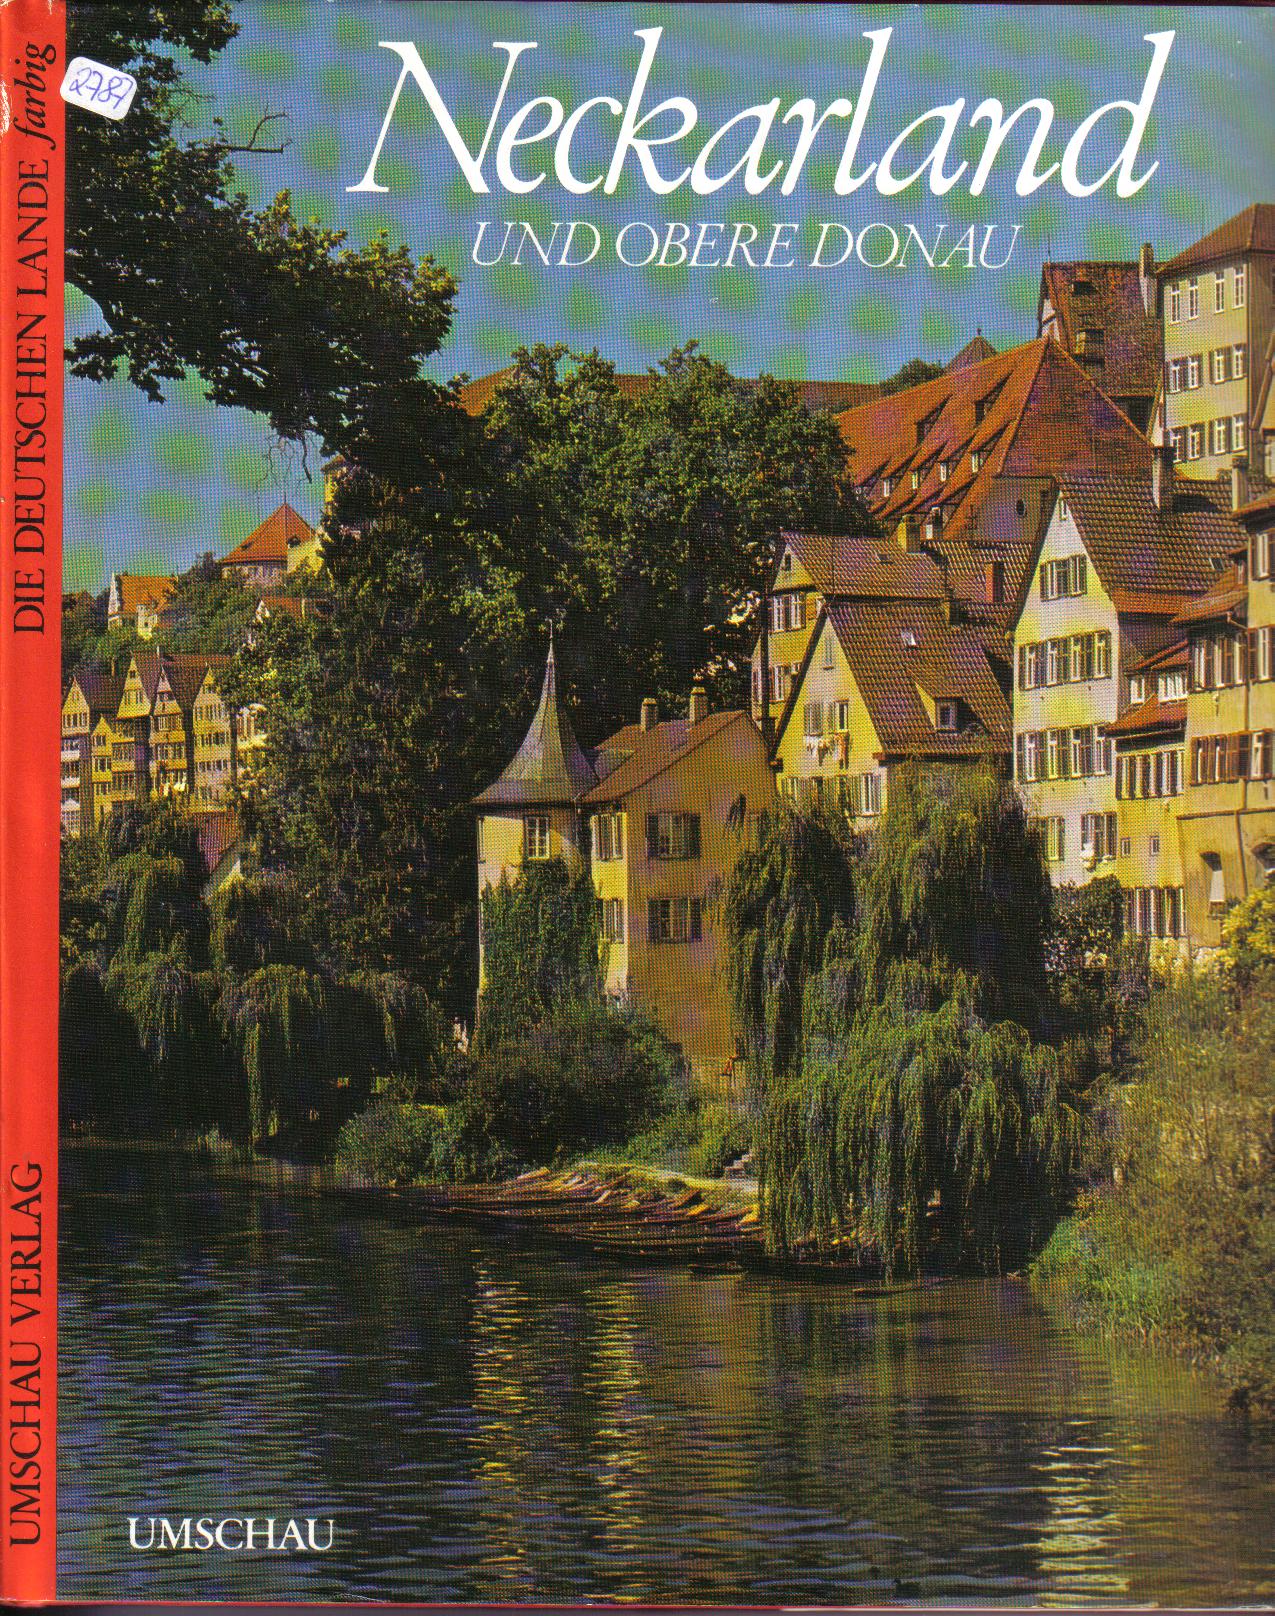 Neckarland und obere Donau    deutsch-englisch- franzoesisch